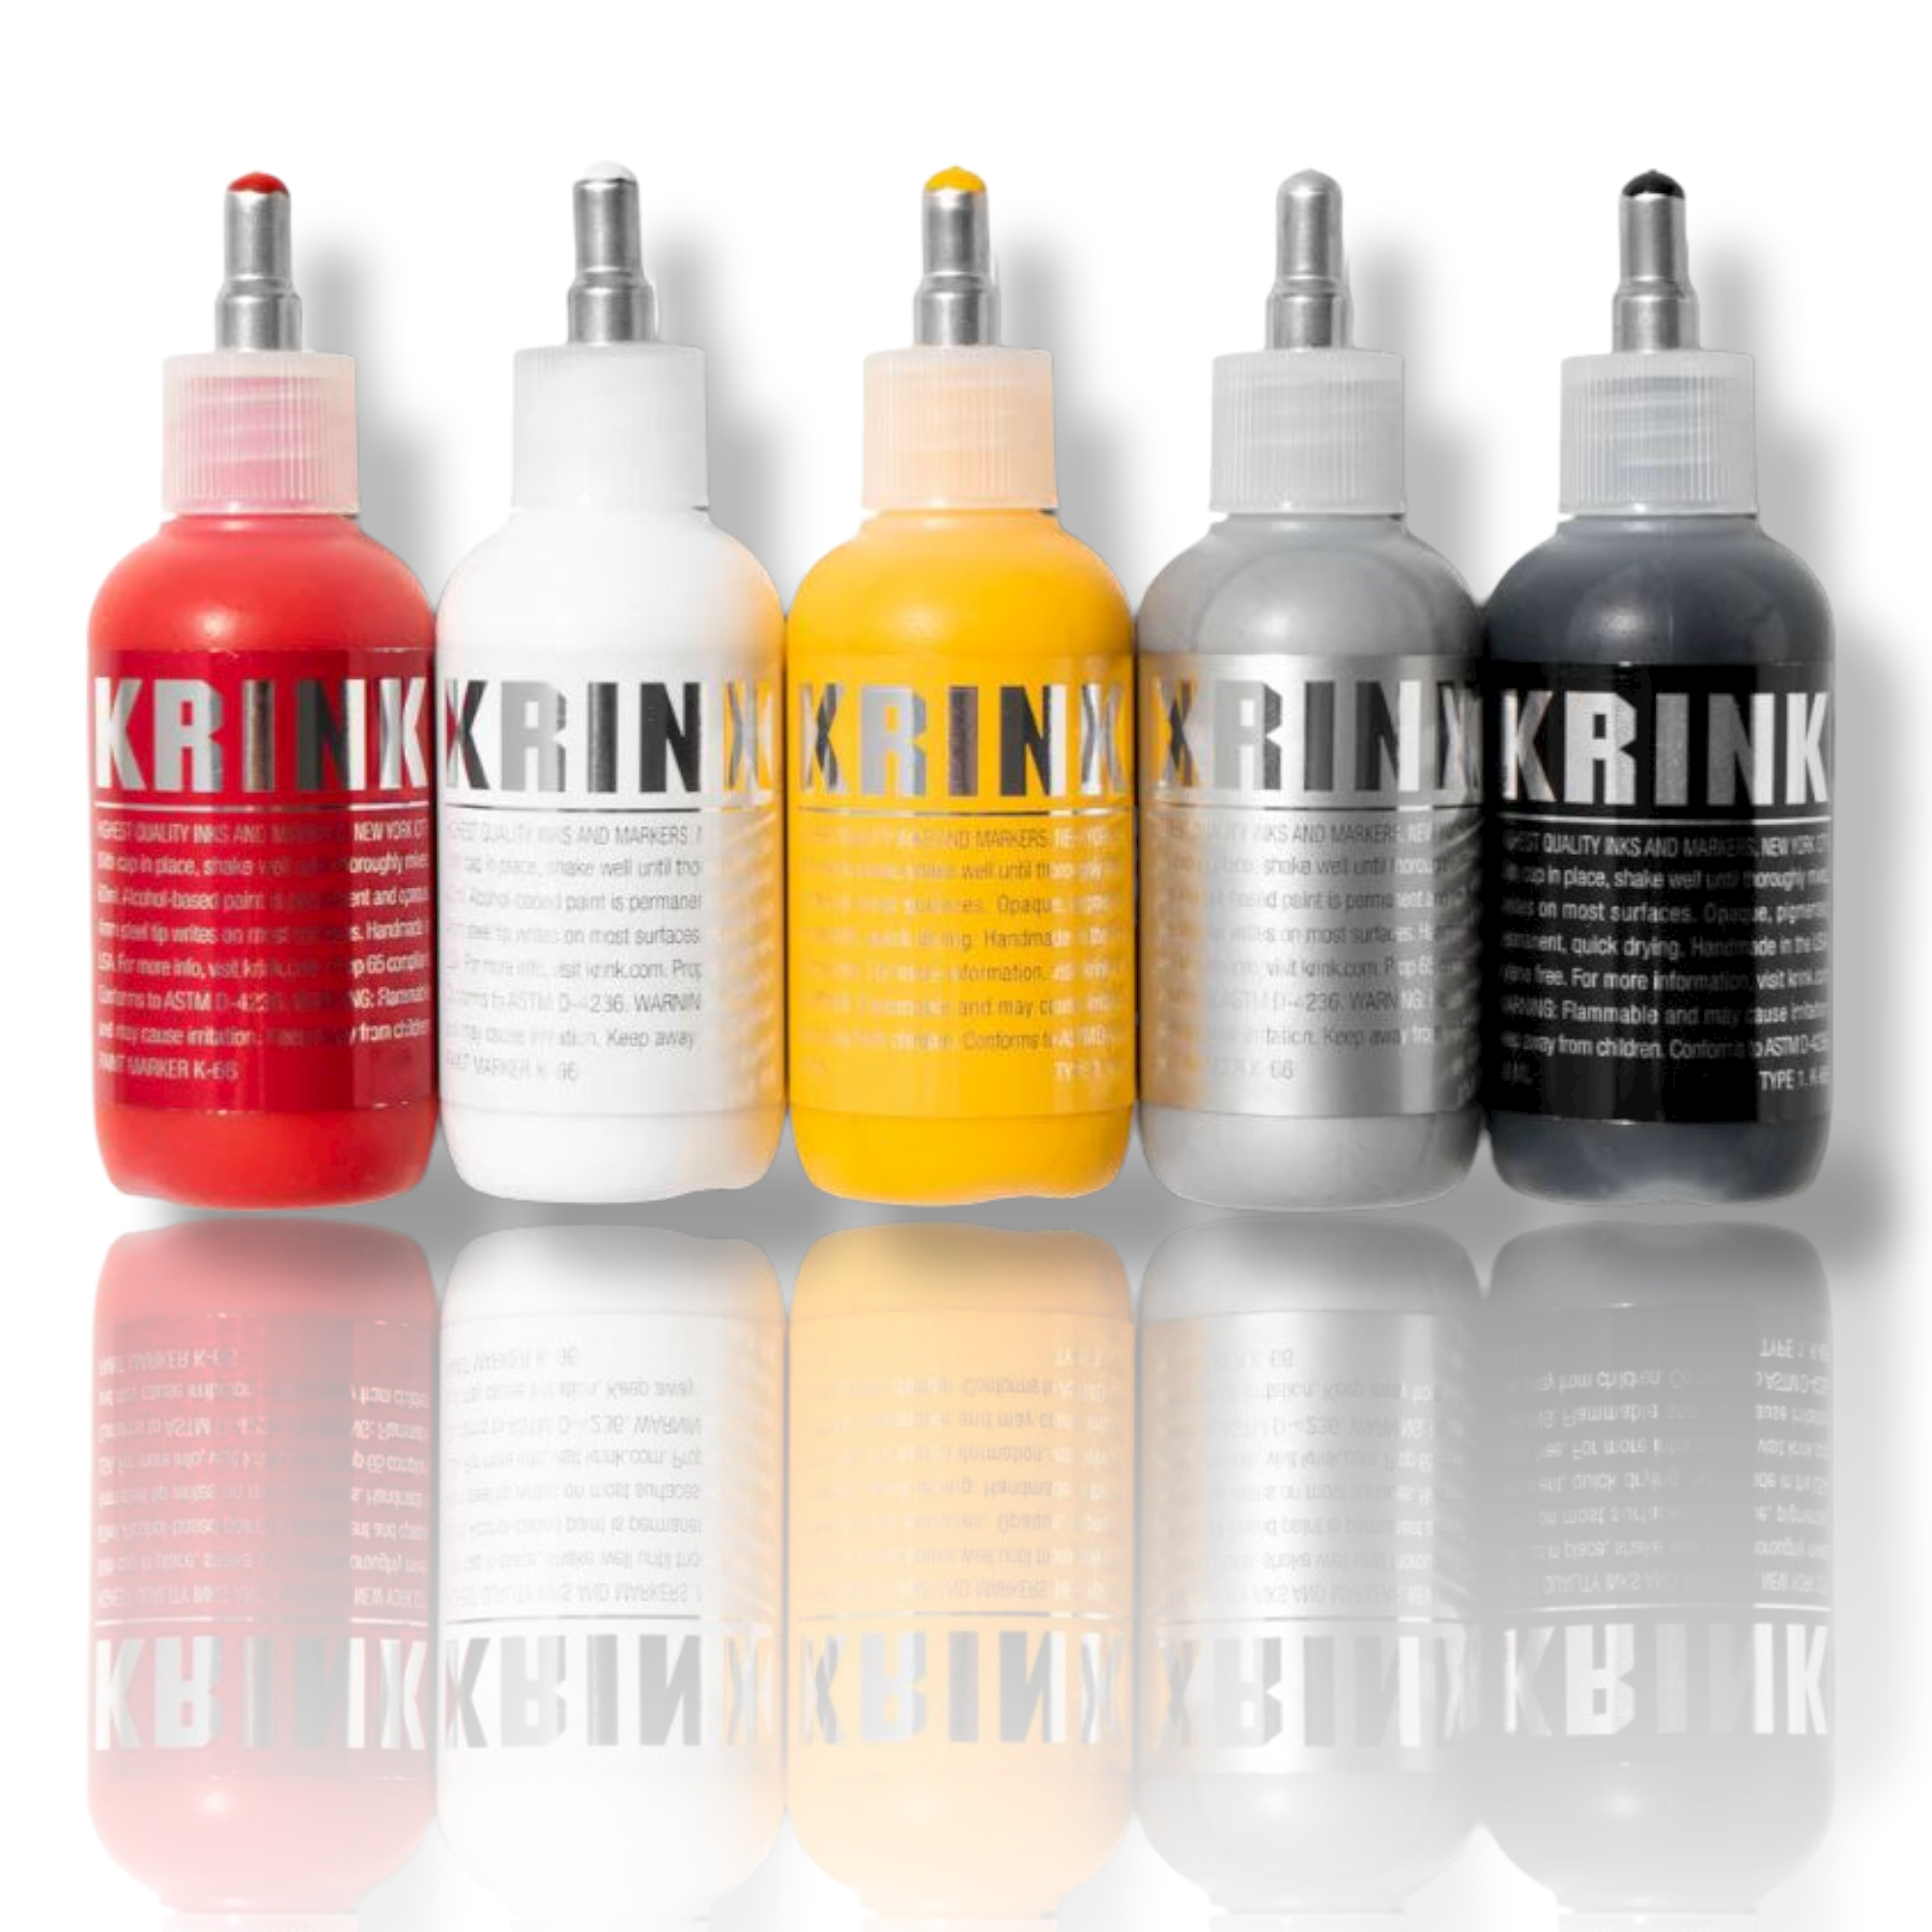 Krink K60 Mops Graffiti Tagging Markers – JAG Art Supply